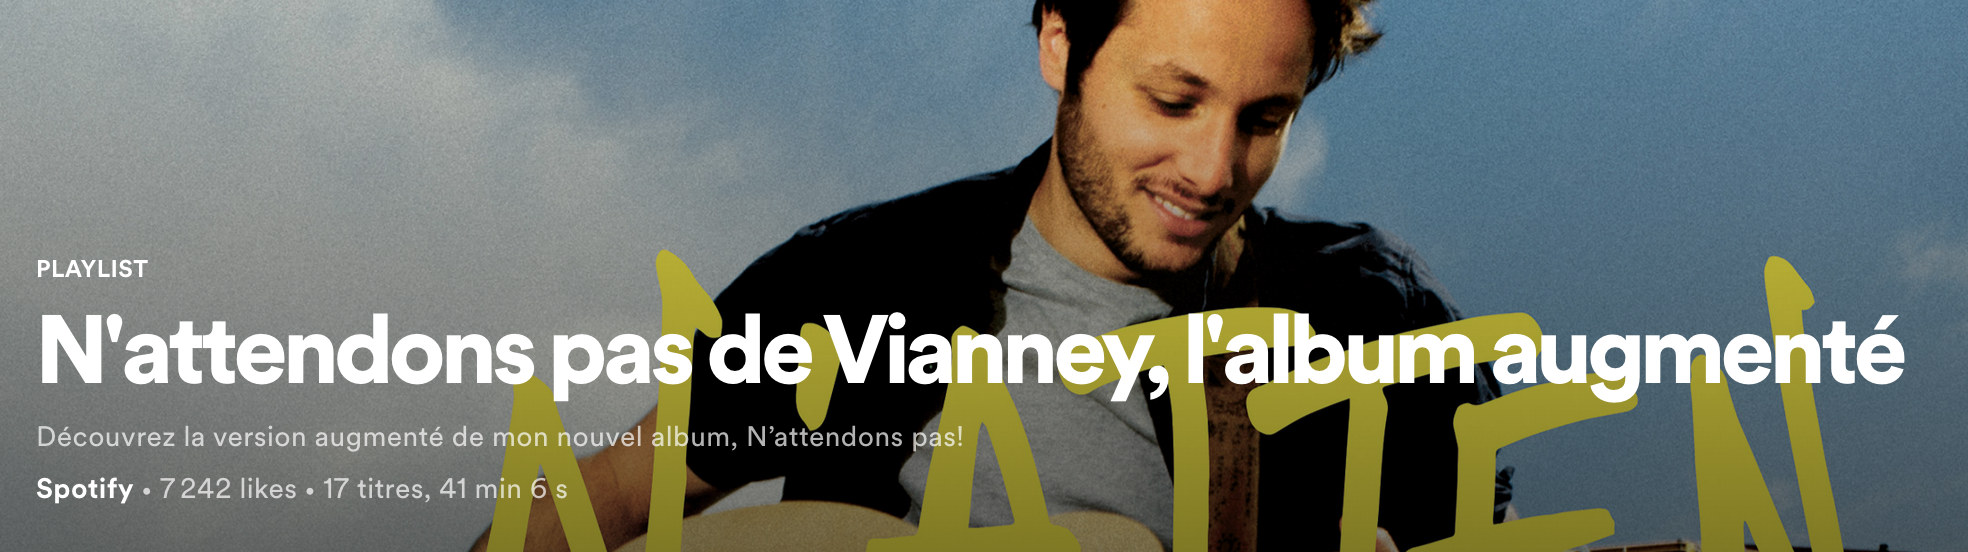 Vianney annonce la sortie de son nouvel album